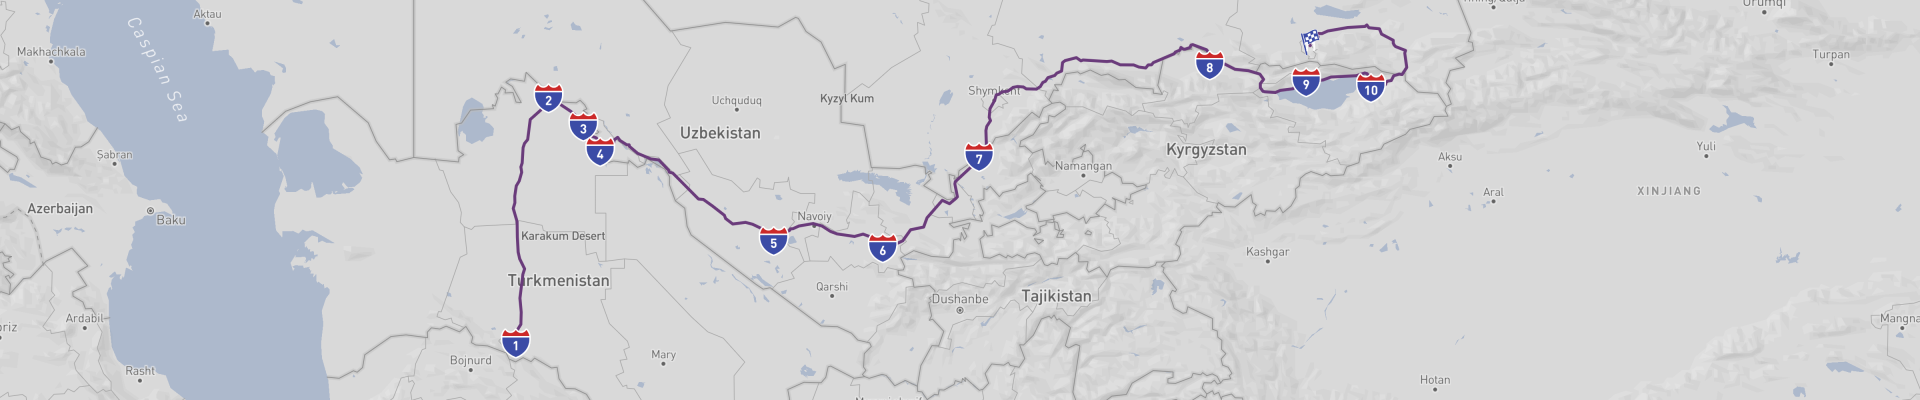 Viaje por carretera a Asia Central